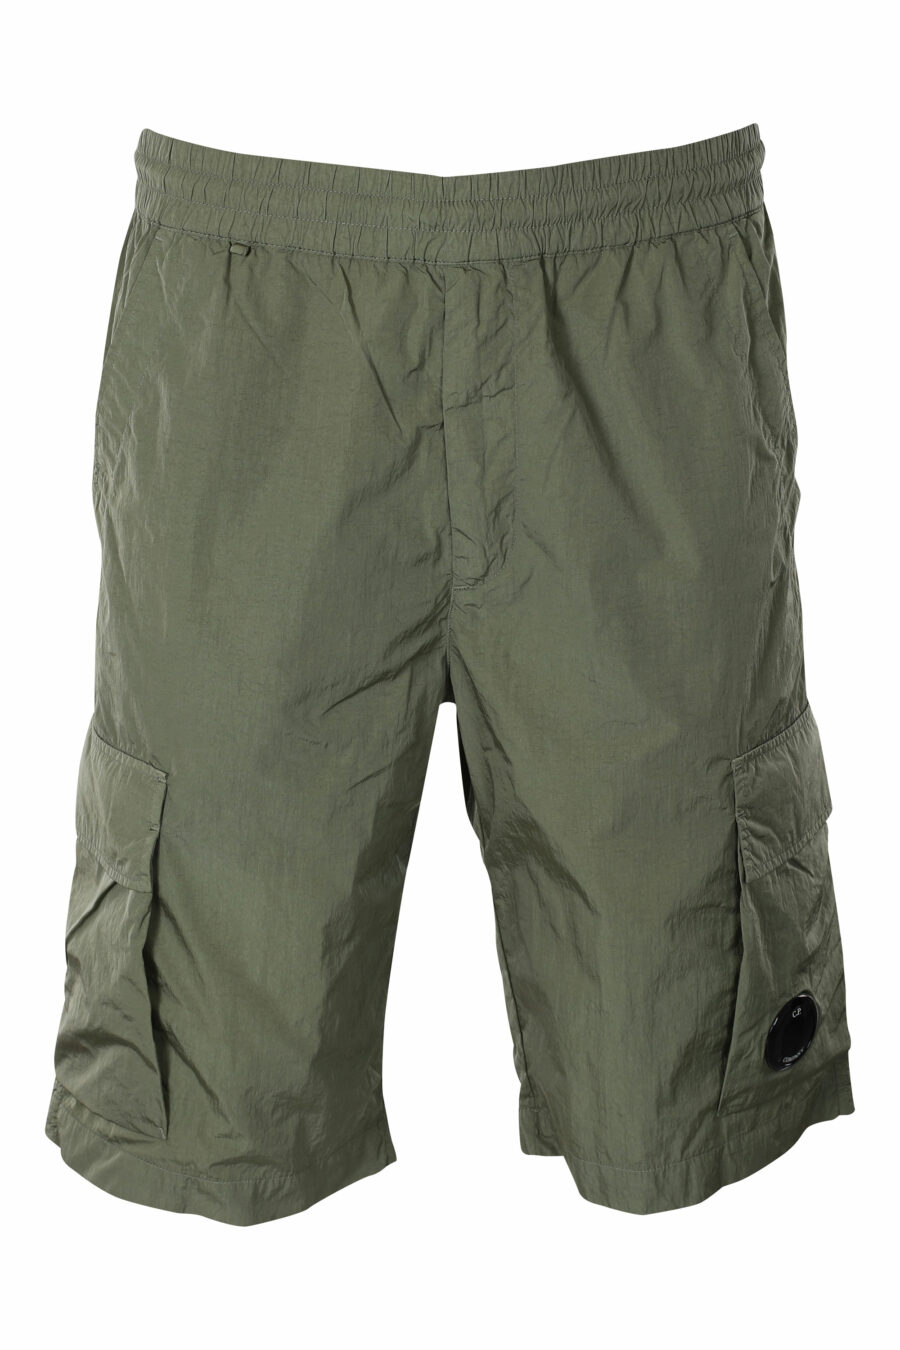 Pantalón corto midi verde militar estilo cargo con minilogo circular - IMG 9584